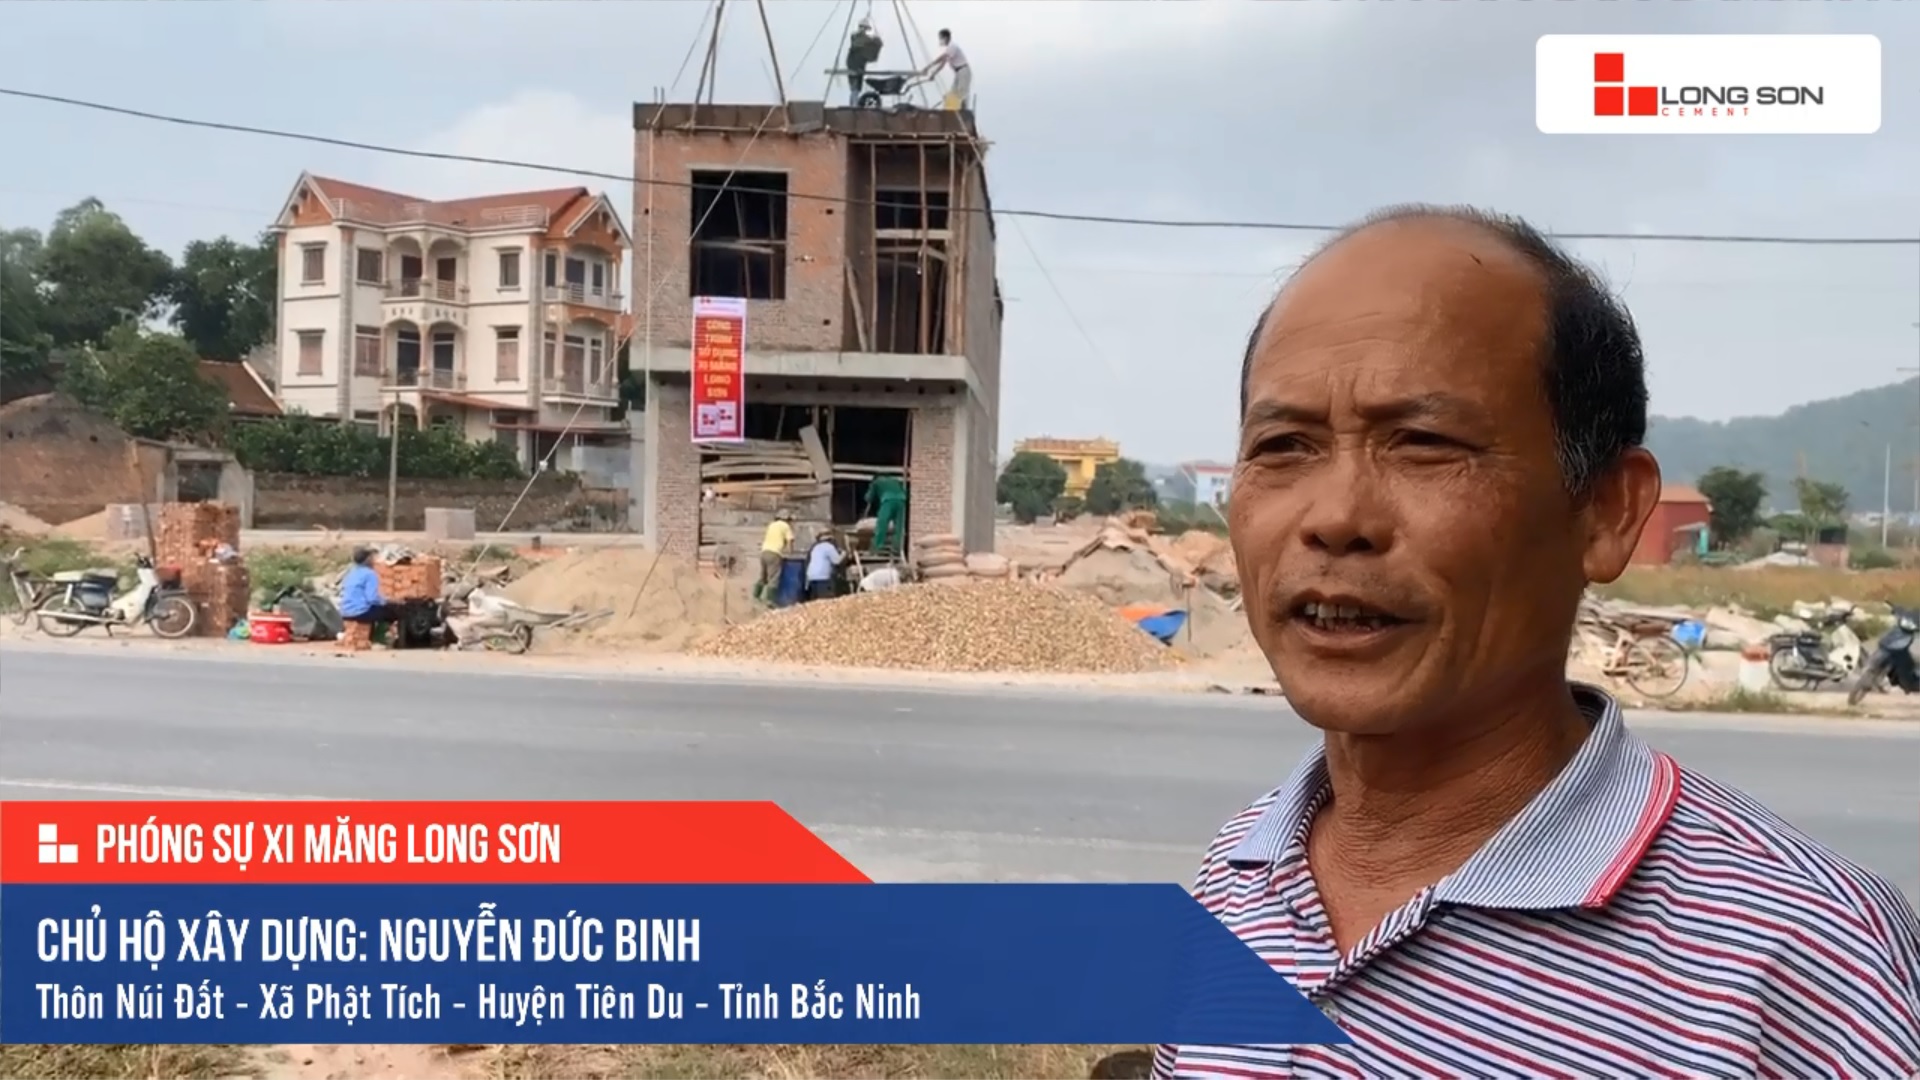 Phóng sự công trình sử dụng Xi măng Long Sơn tại Bắc Ninh 19.12.2019